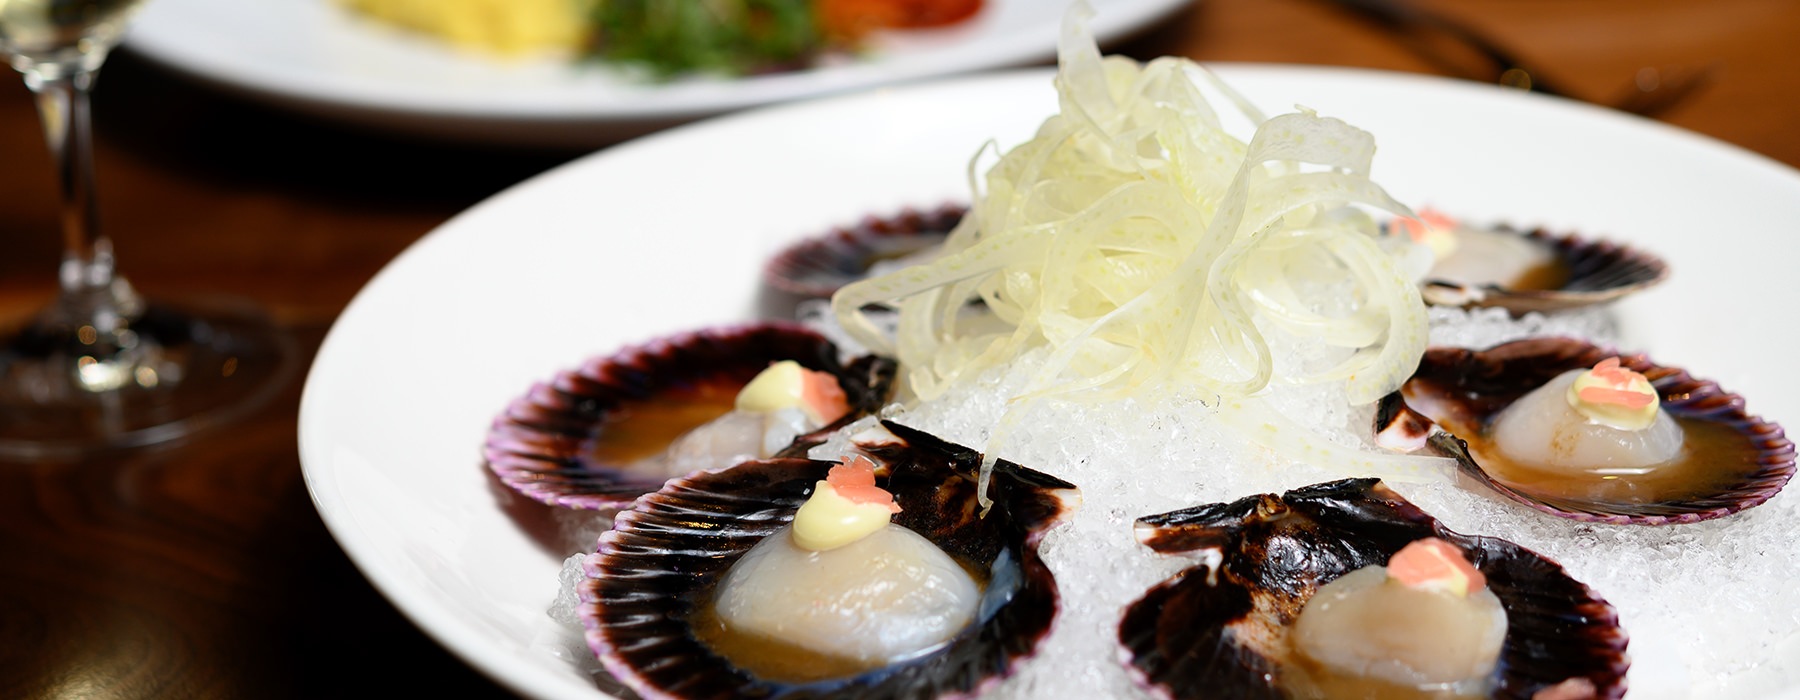 sea food on plate